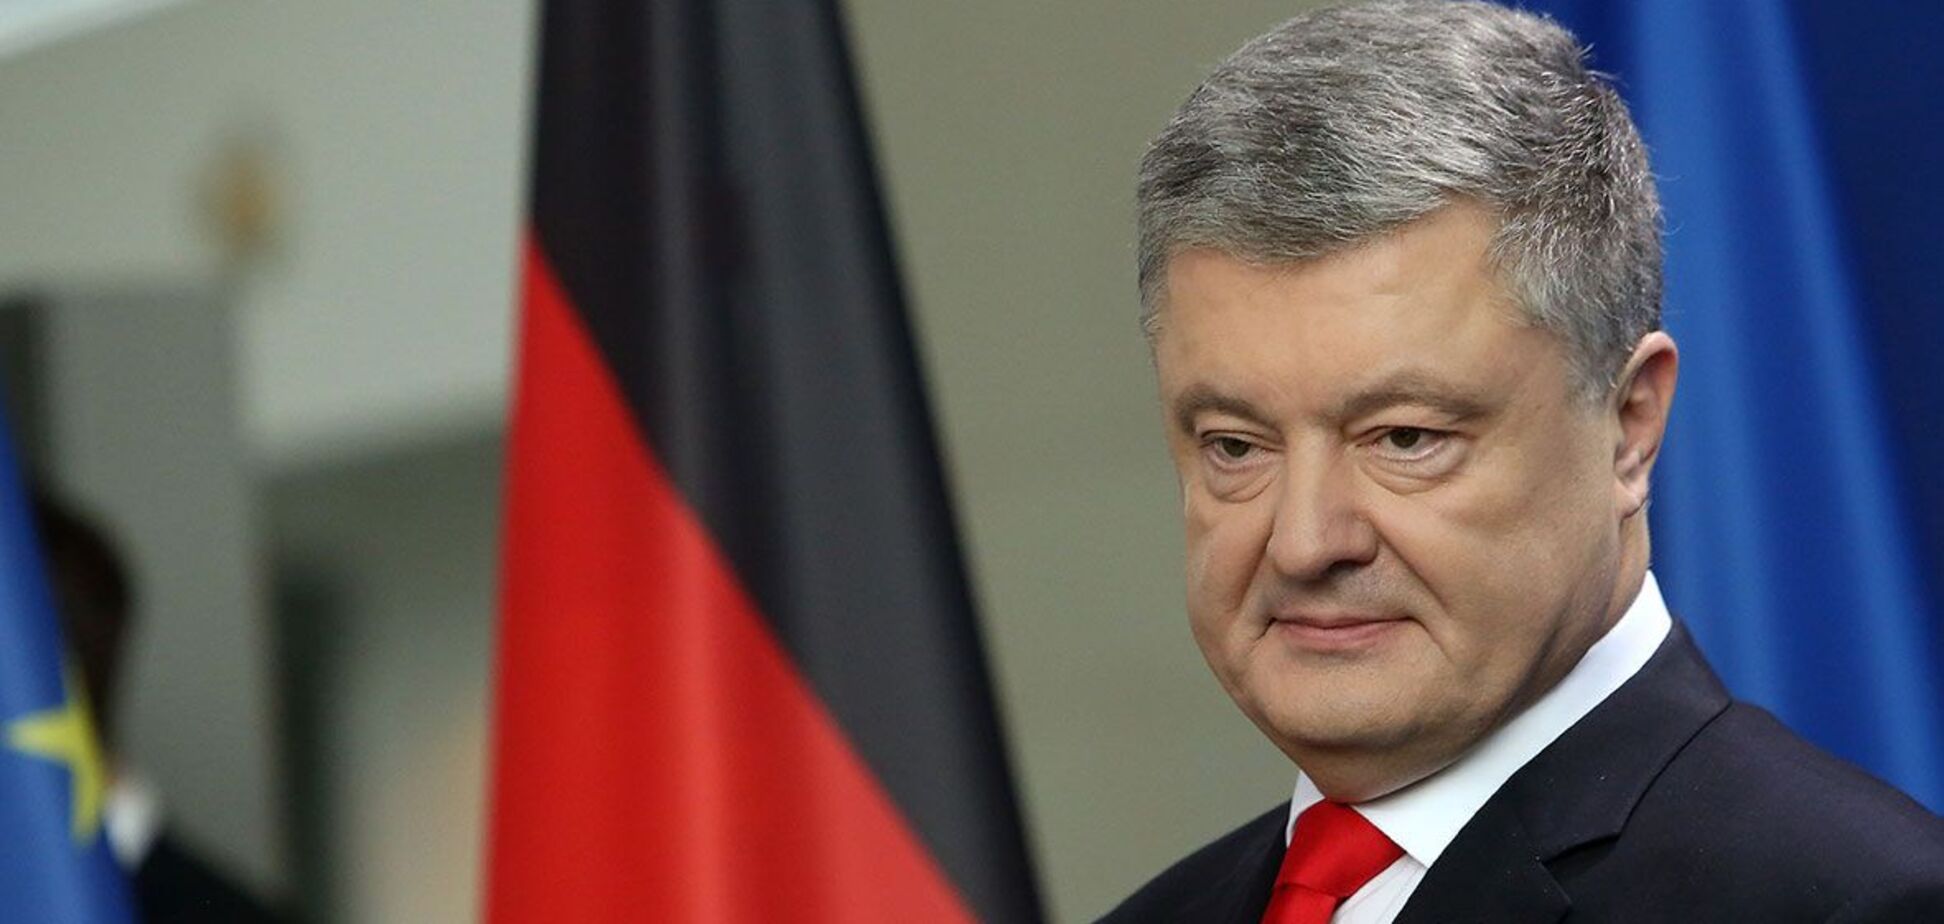 Порошенко возложил ответственность за ситуацию в Украине на фракции, поддержавшие бюджет